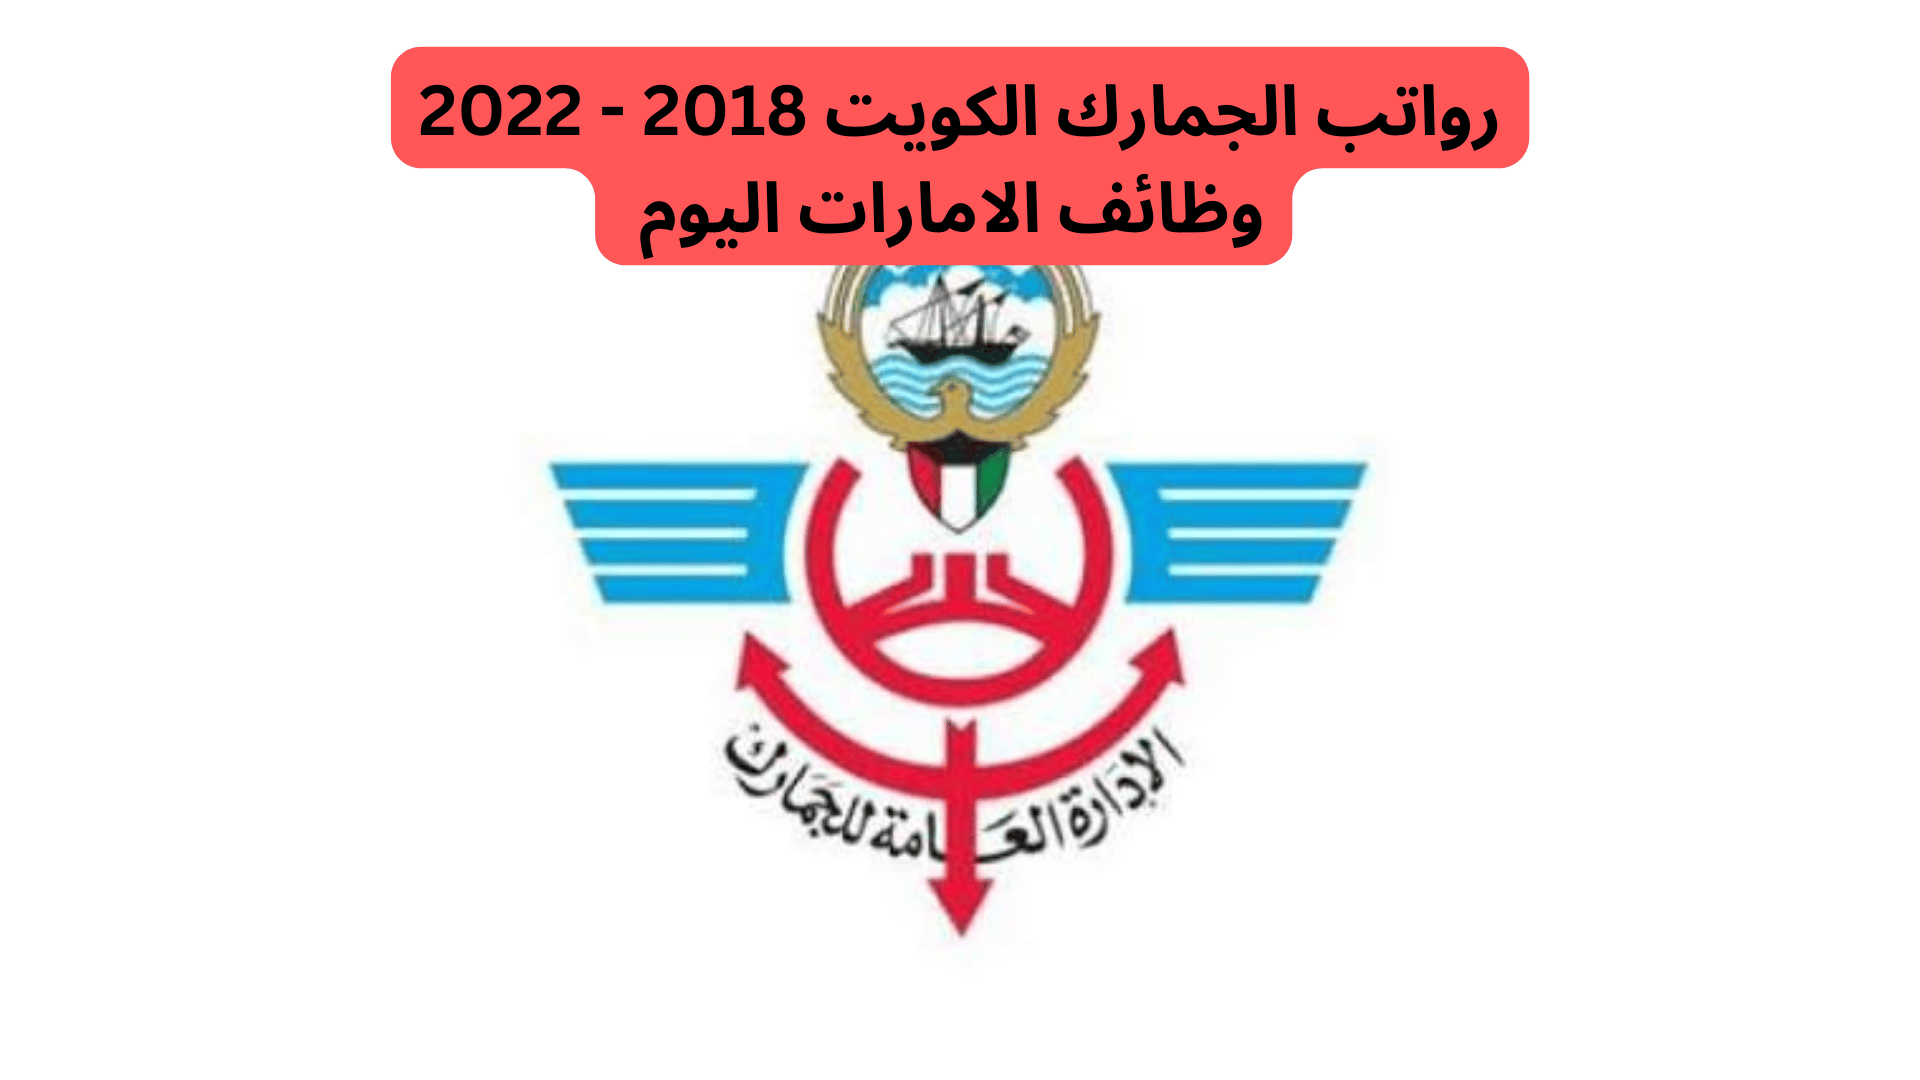 رواتب الجمارك الكويت 2018 - 2022